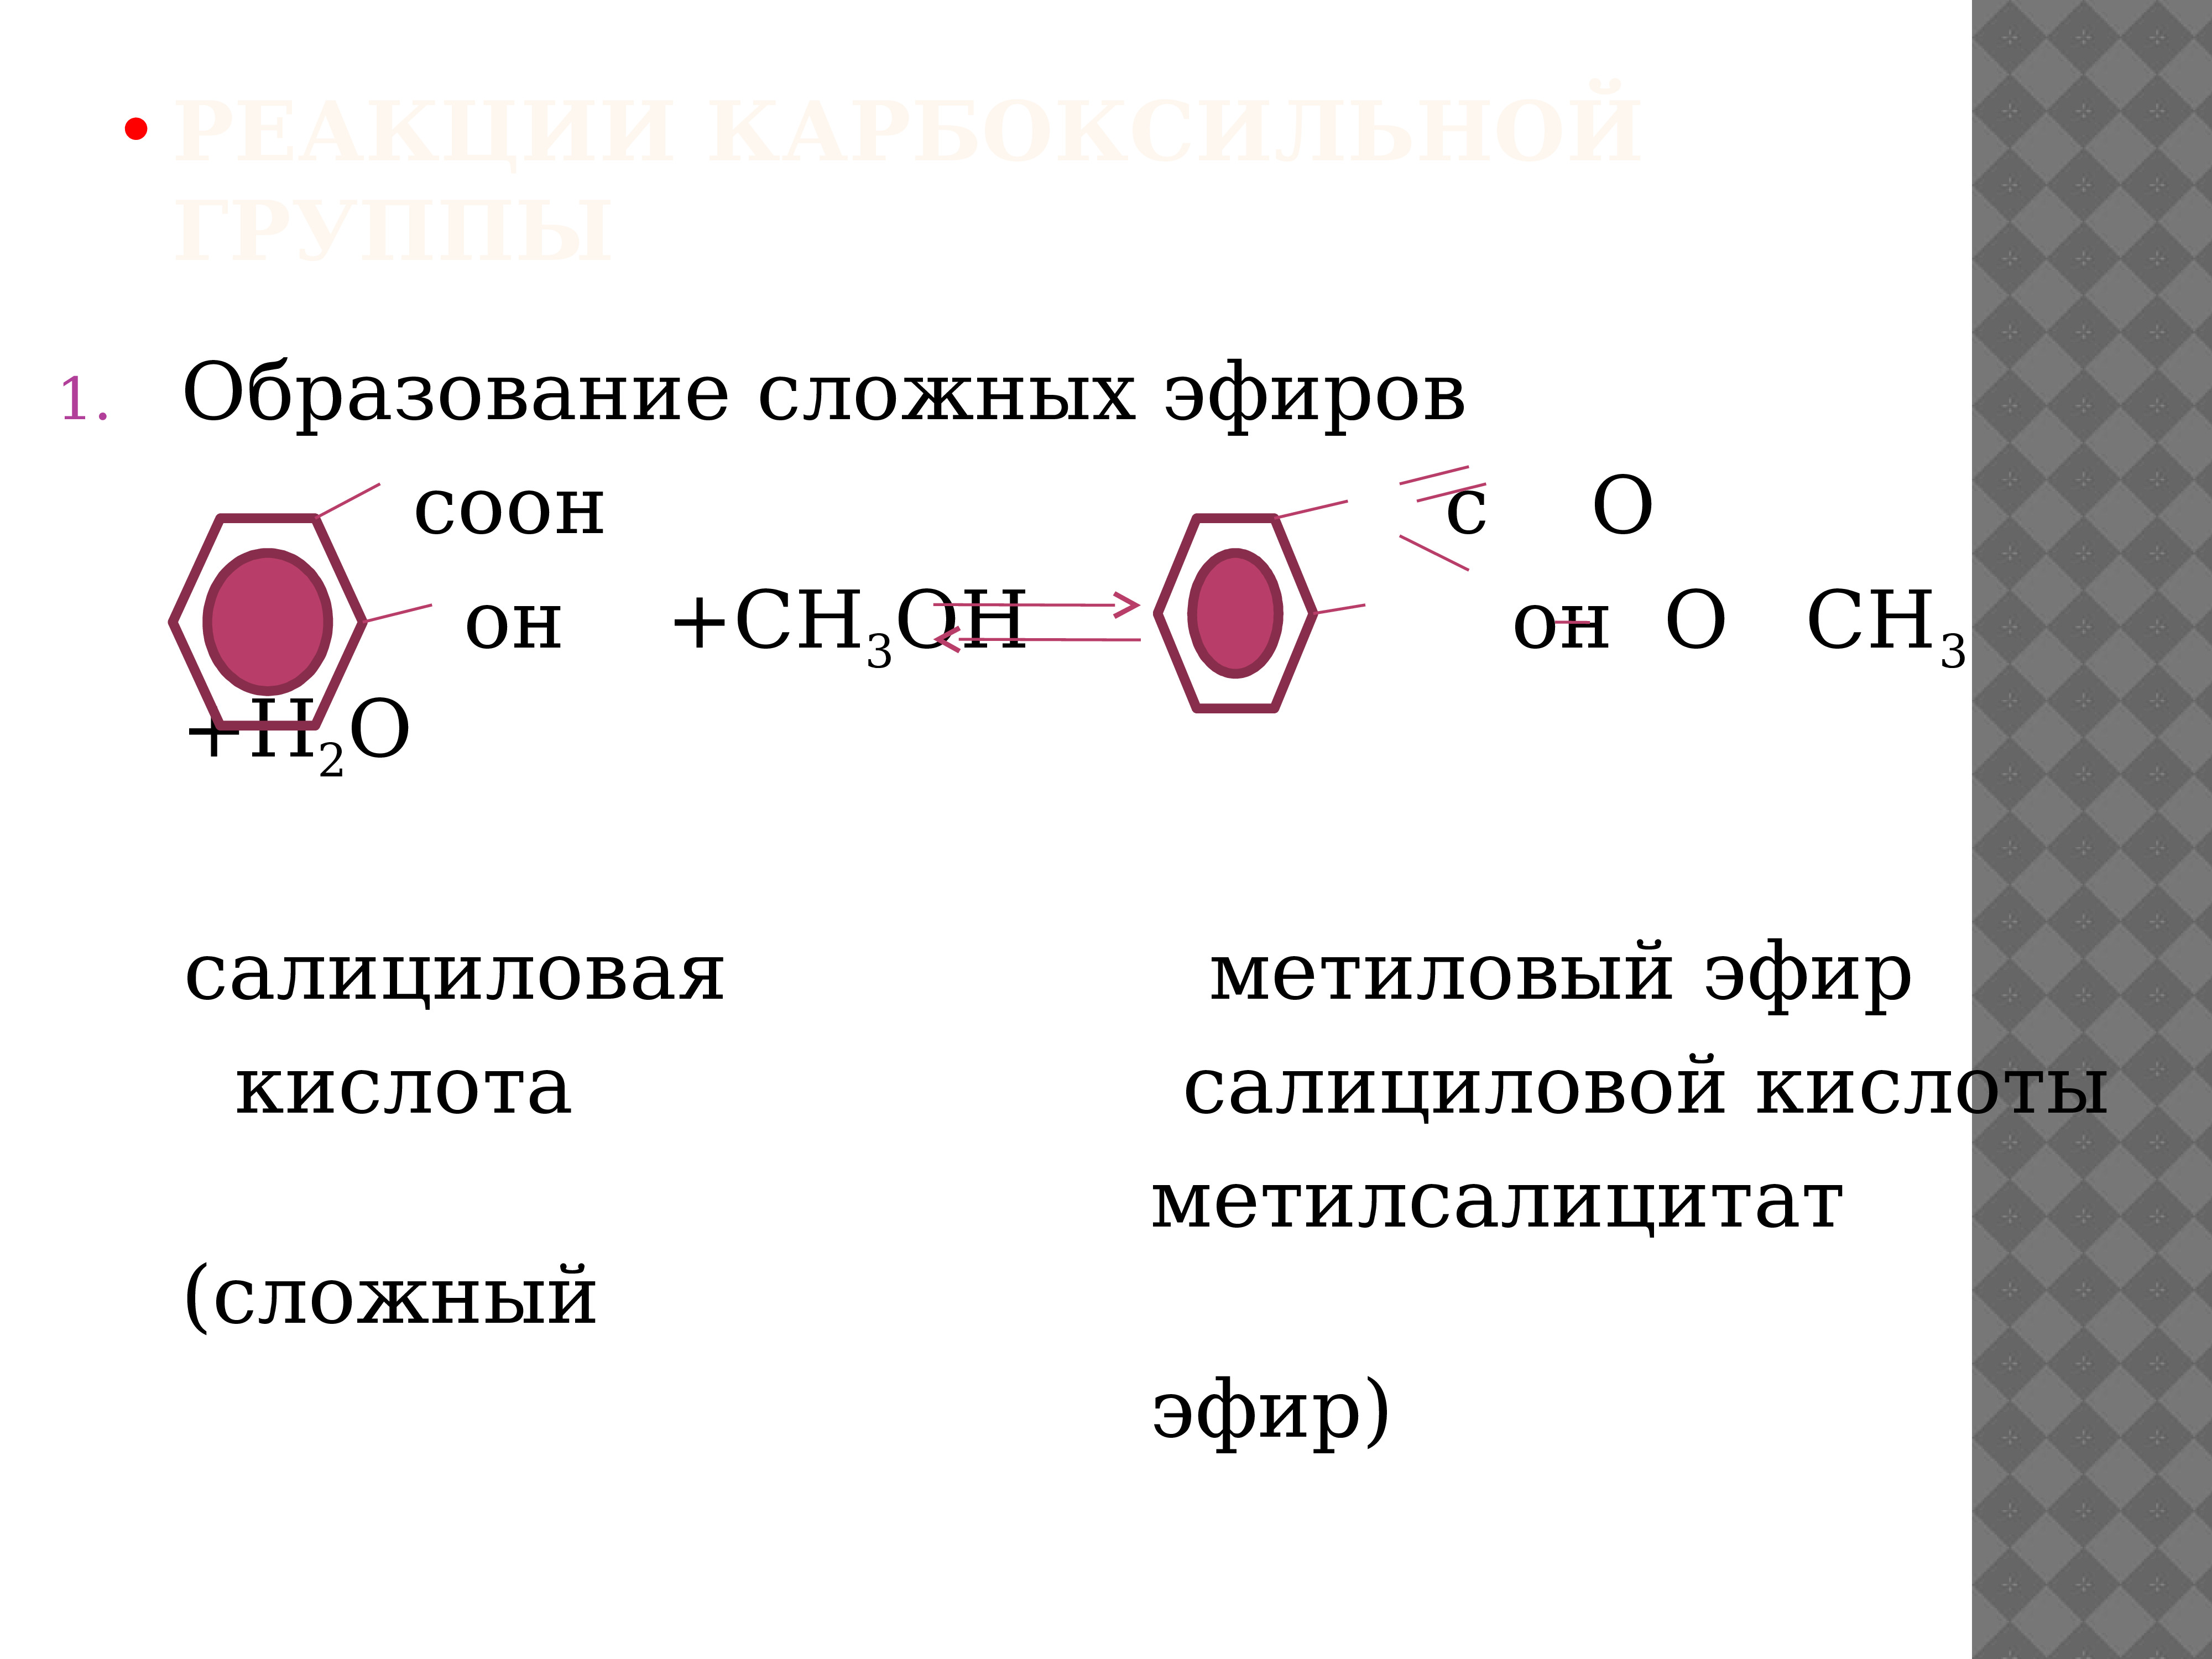 Метанол метиловый эфир. Салициловая кислота + c6h5cocl. Салициловая кислота с ch3cocl. Образование сложных эфиров из салициловой кислоты.